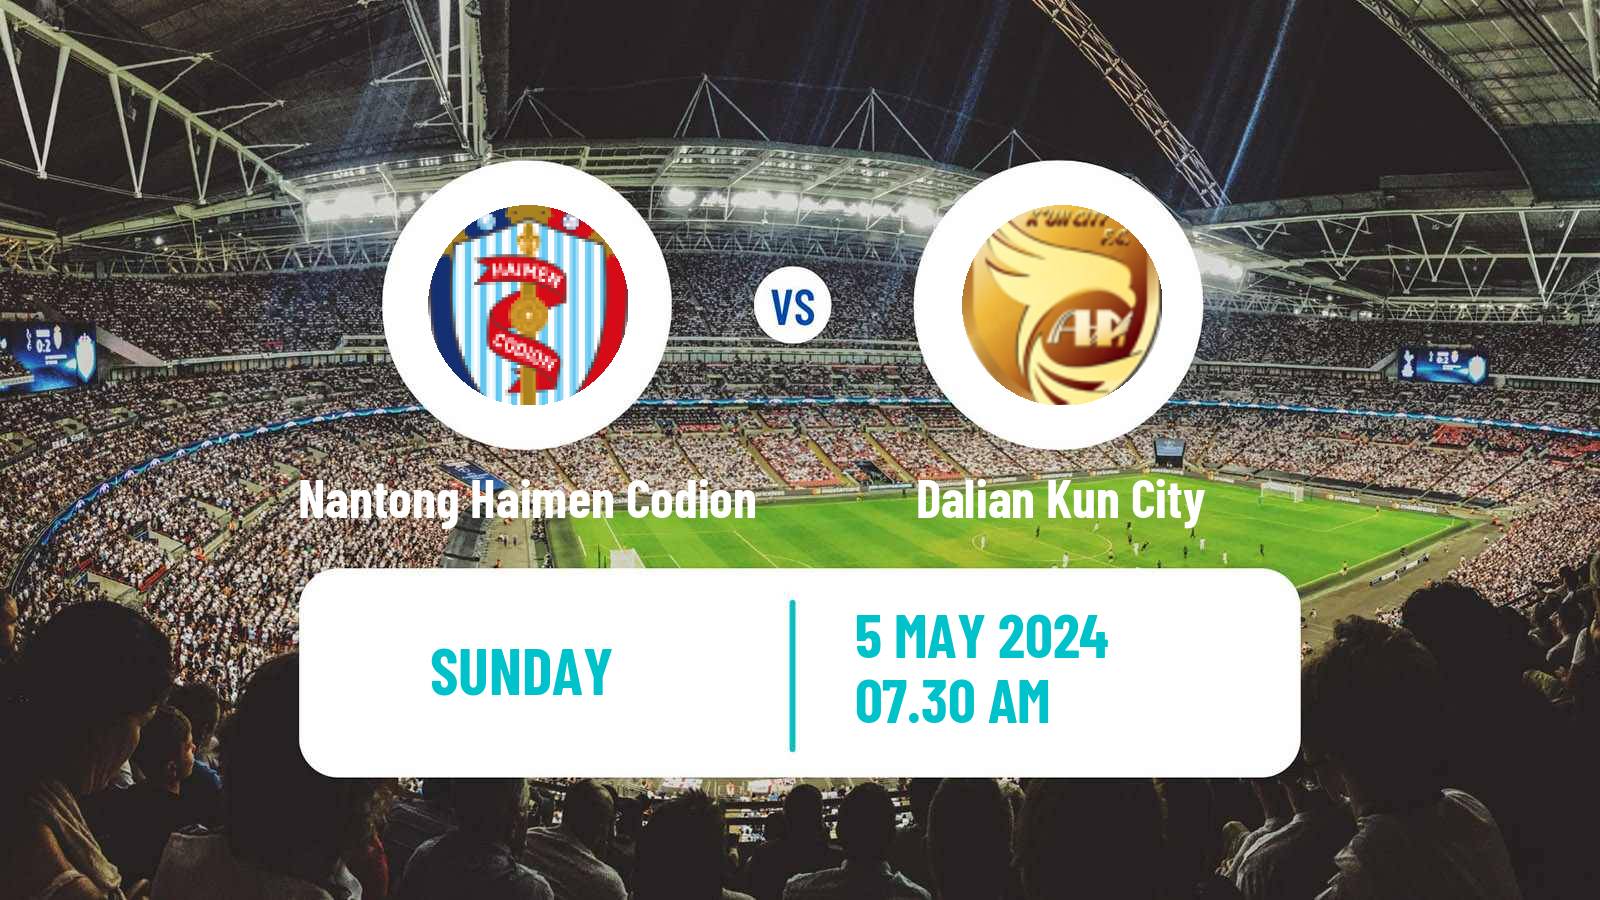 Soccer Chinese Yi League Nantong Haimen Codion - Dalian Kun City